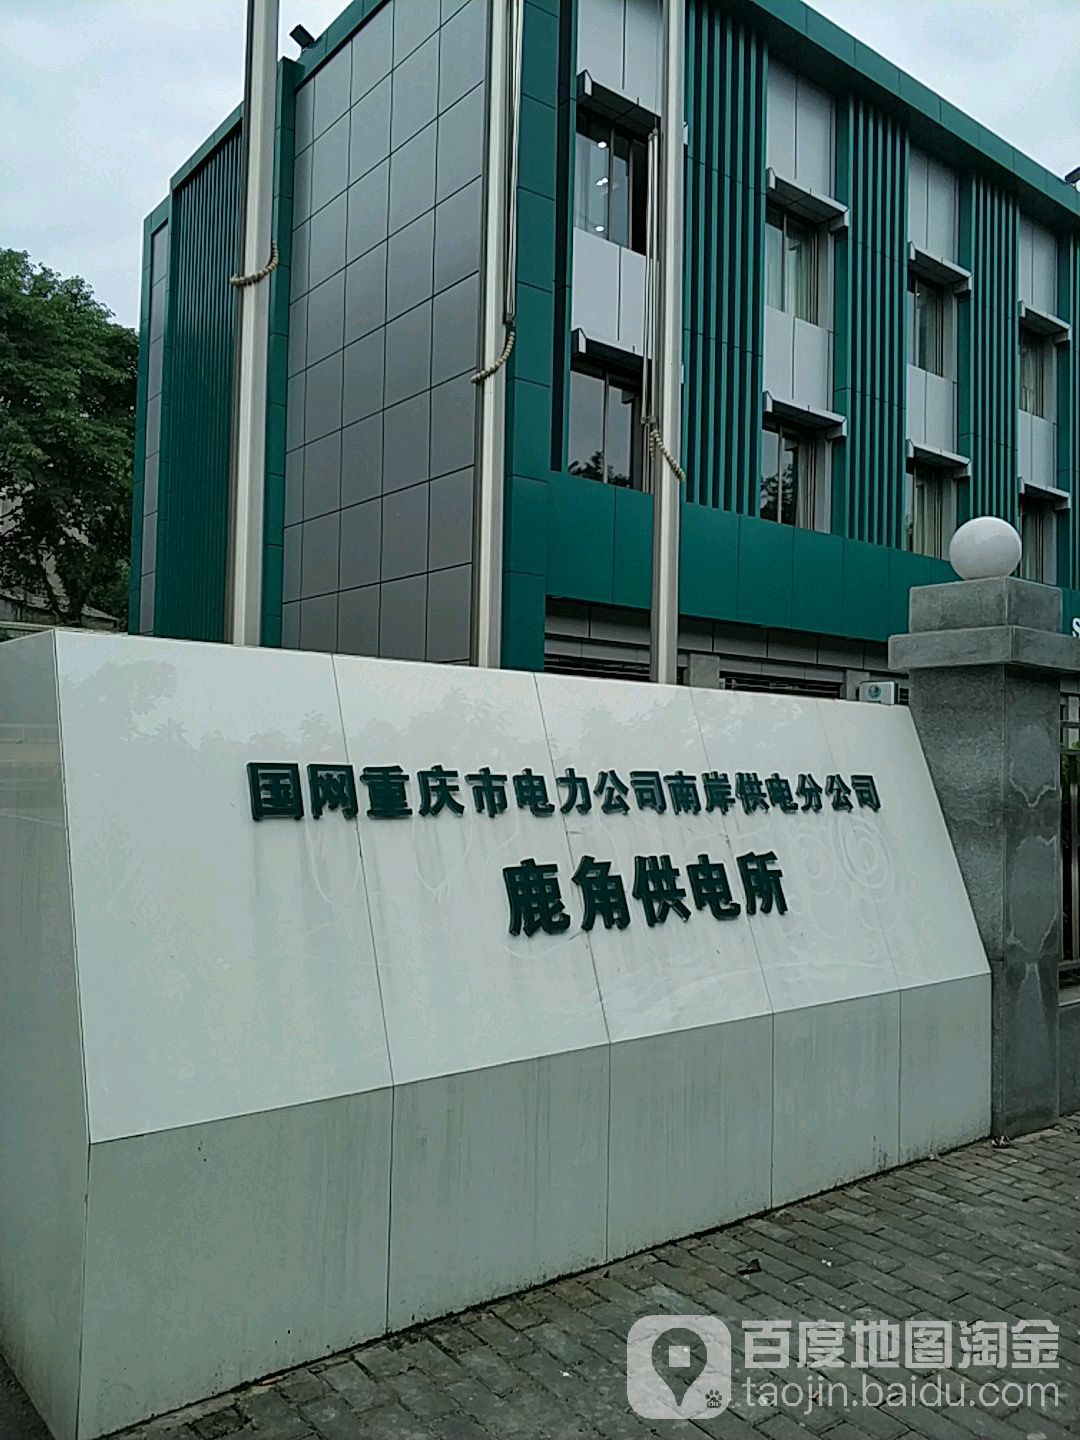 国网重庆市电力公司南安供电分公司鹿角供电所